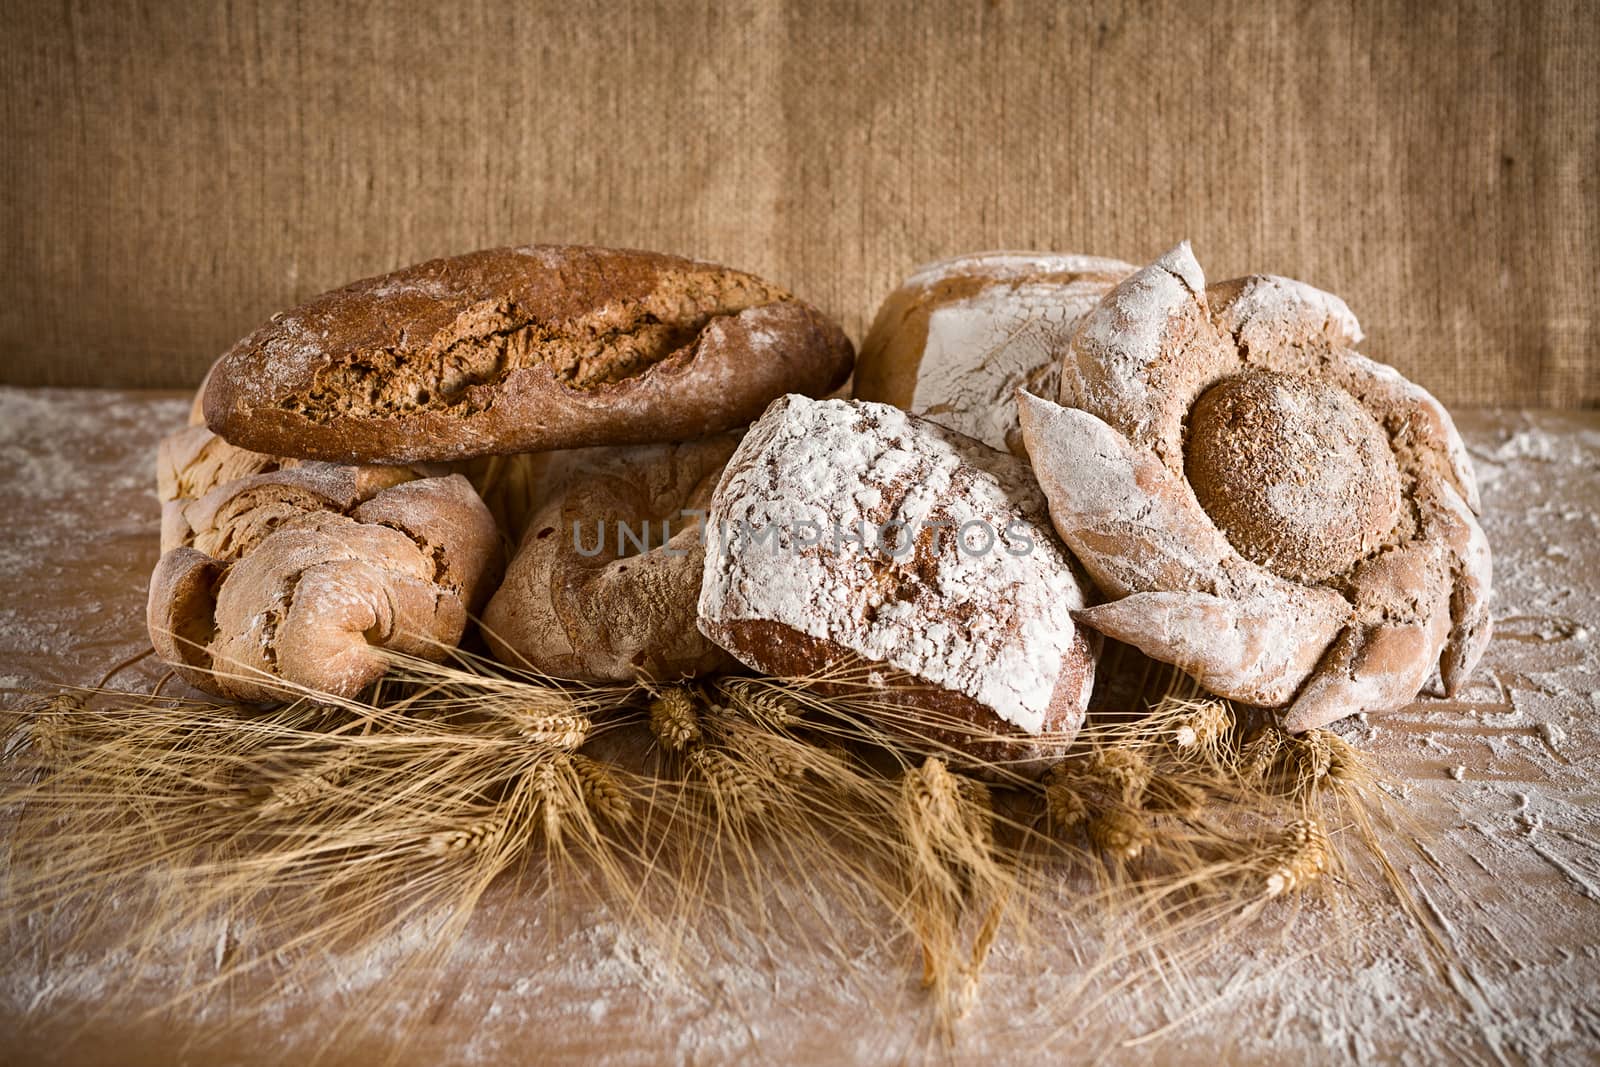 Bread of various types by LuigiMorbidelli